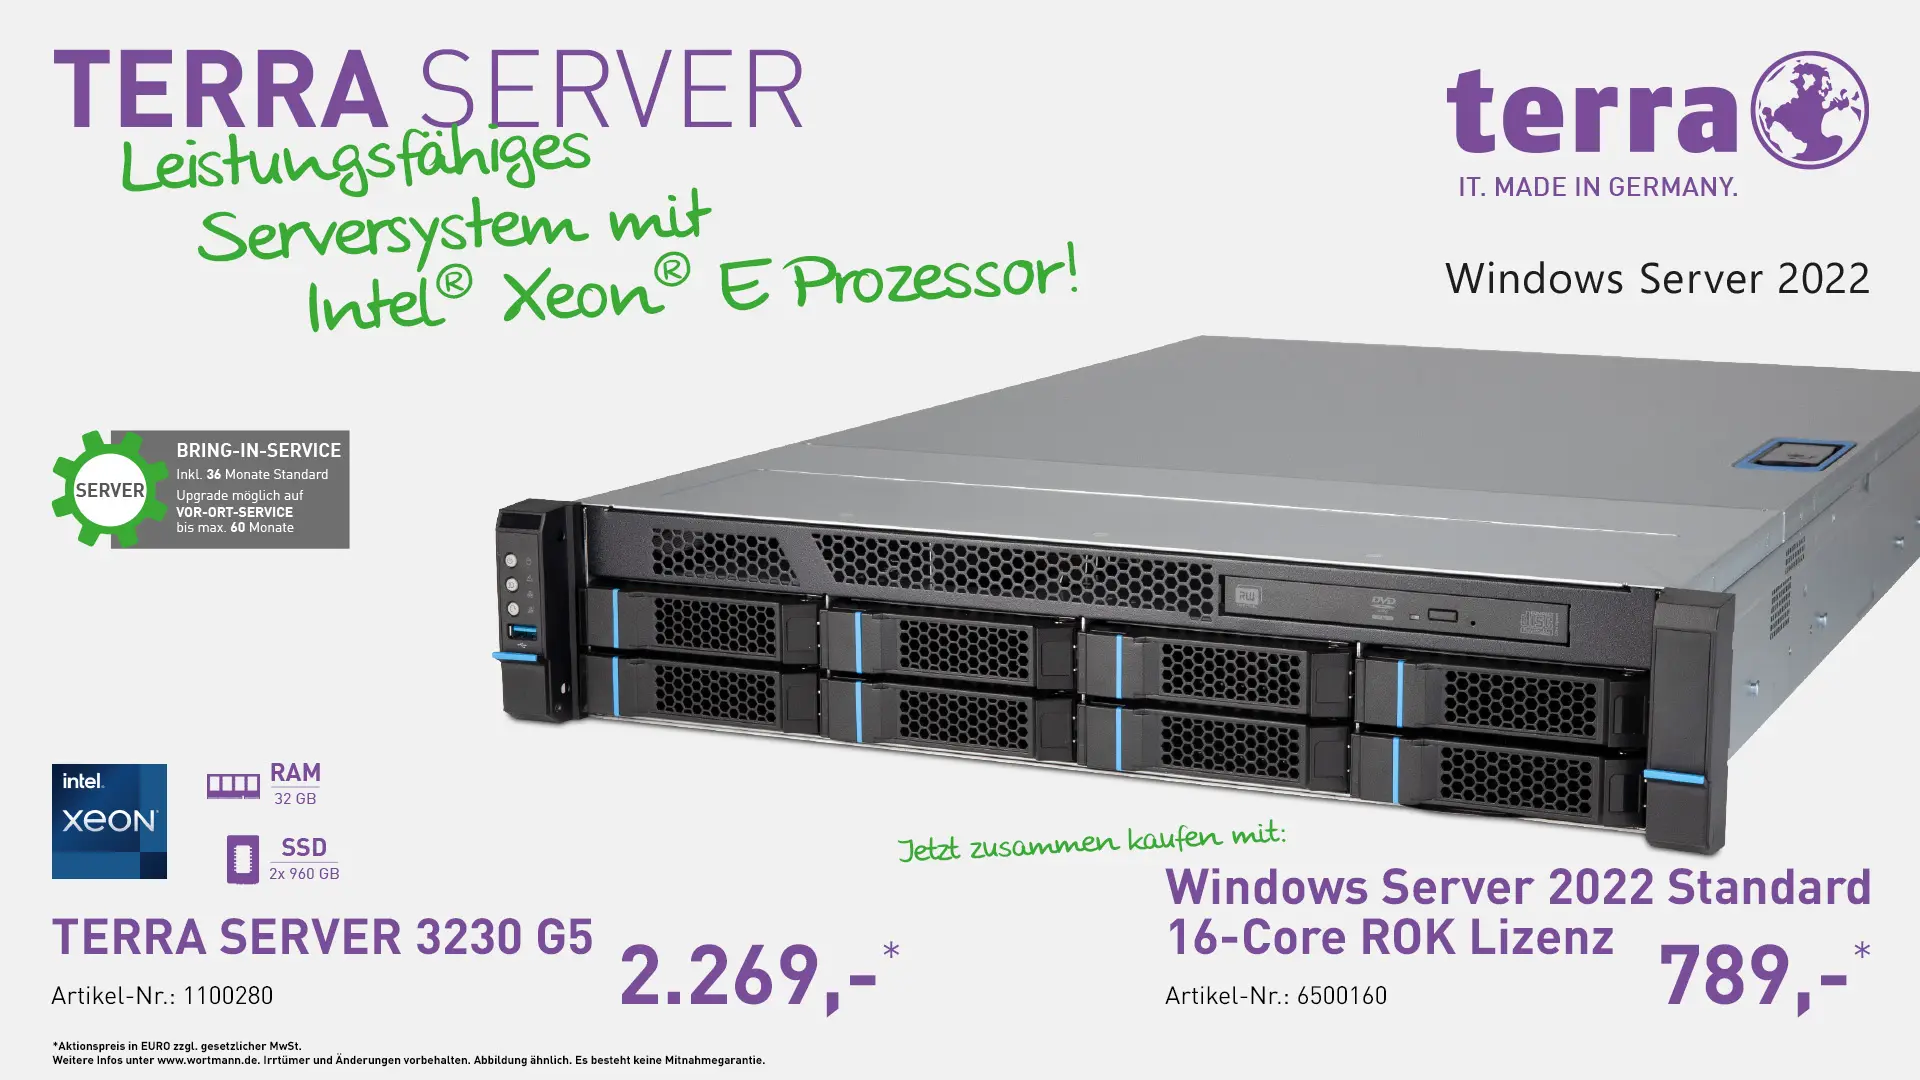 Terra Server 3230 G5 & Windows Server 2022 Standard 16-Core ROK Lizenz